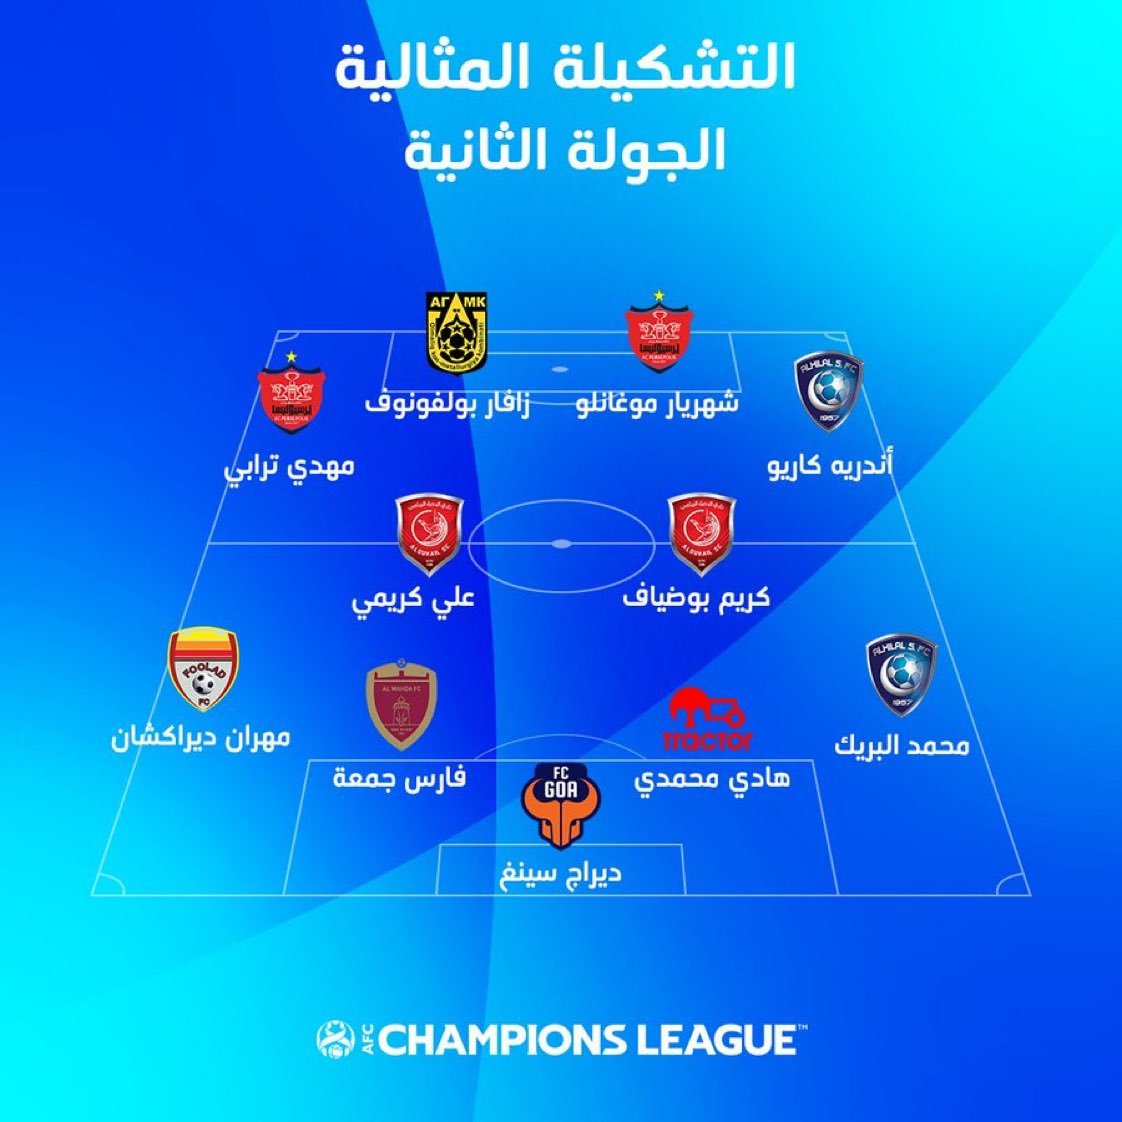 ثنائي الدحيل كريم بوضياف وعلي كريمي ضمن التشكيلة المثالية للجولة الثانية من دوري أبطال آسيا 2021 ️🇶🇦